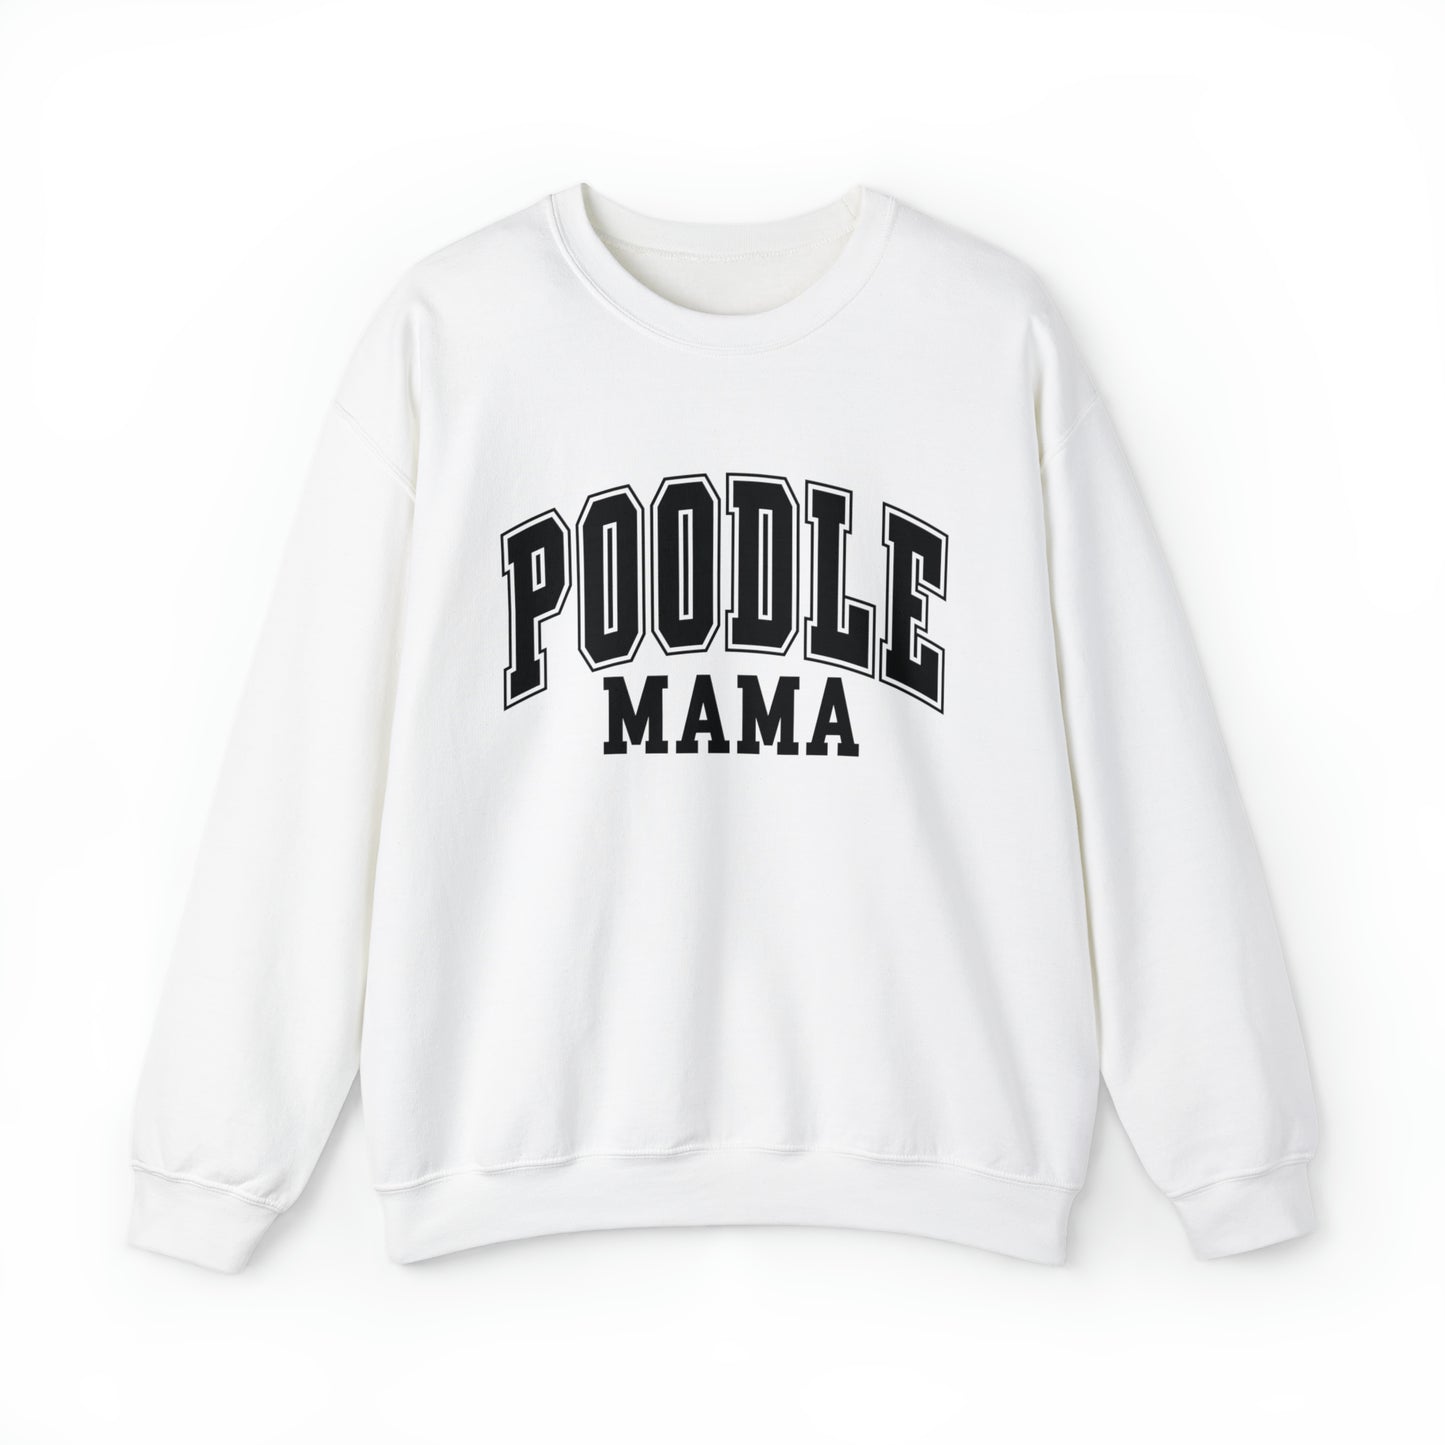 Poodle Mama Sweatshirt